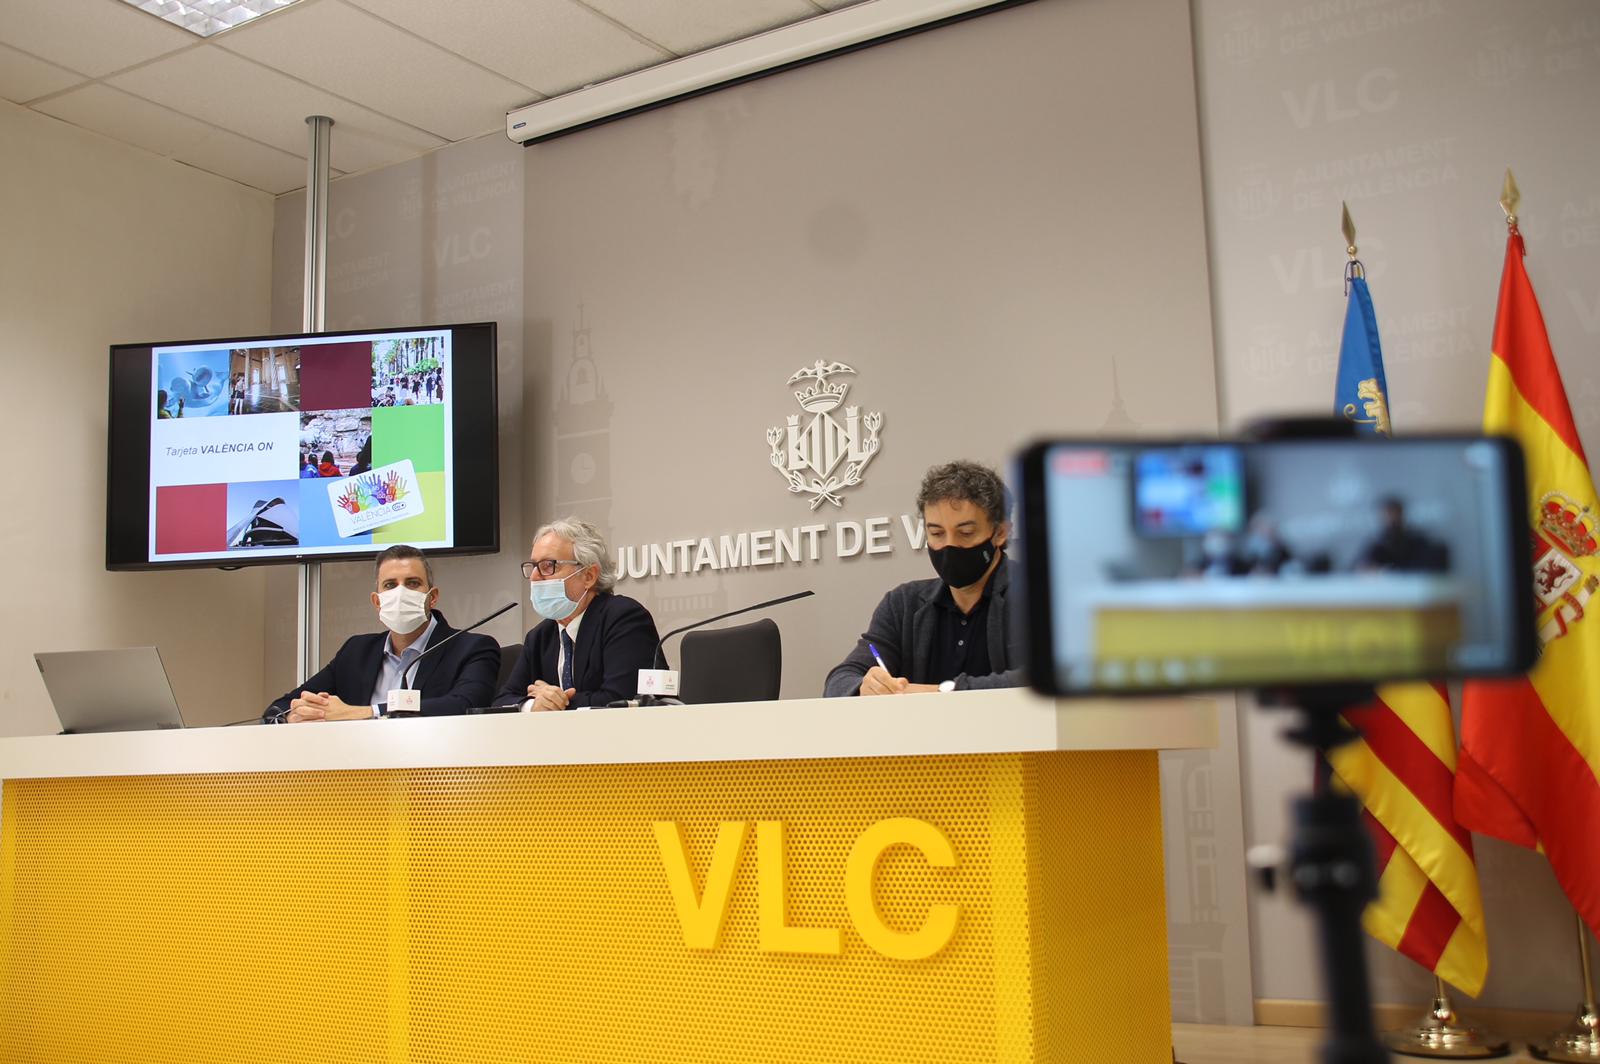 Presentacion tarjeta virtual València ON